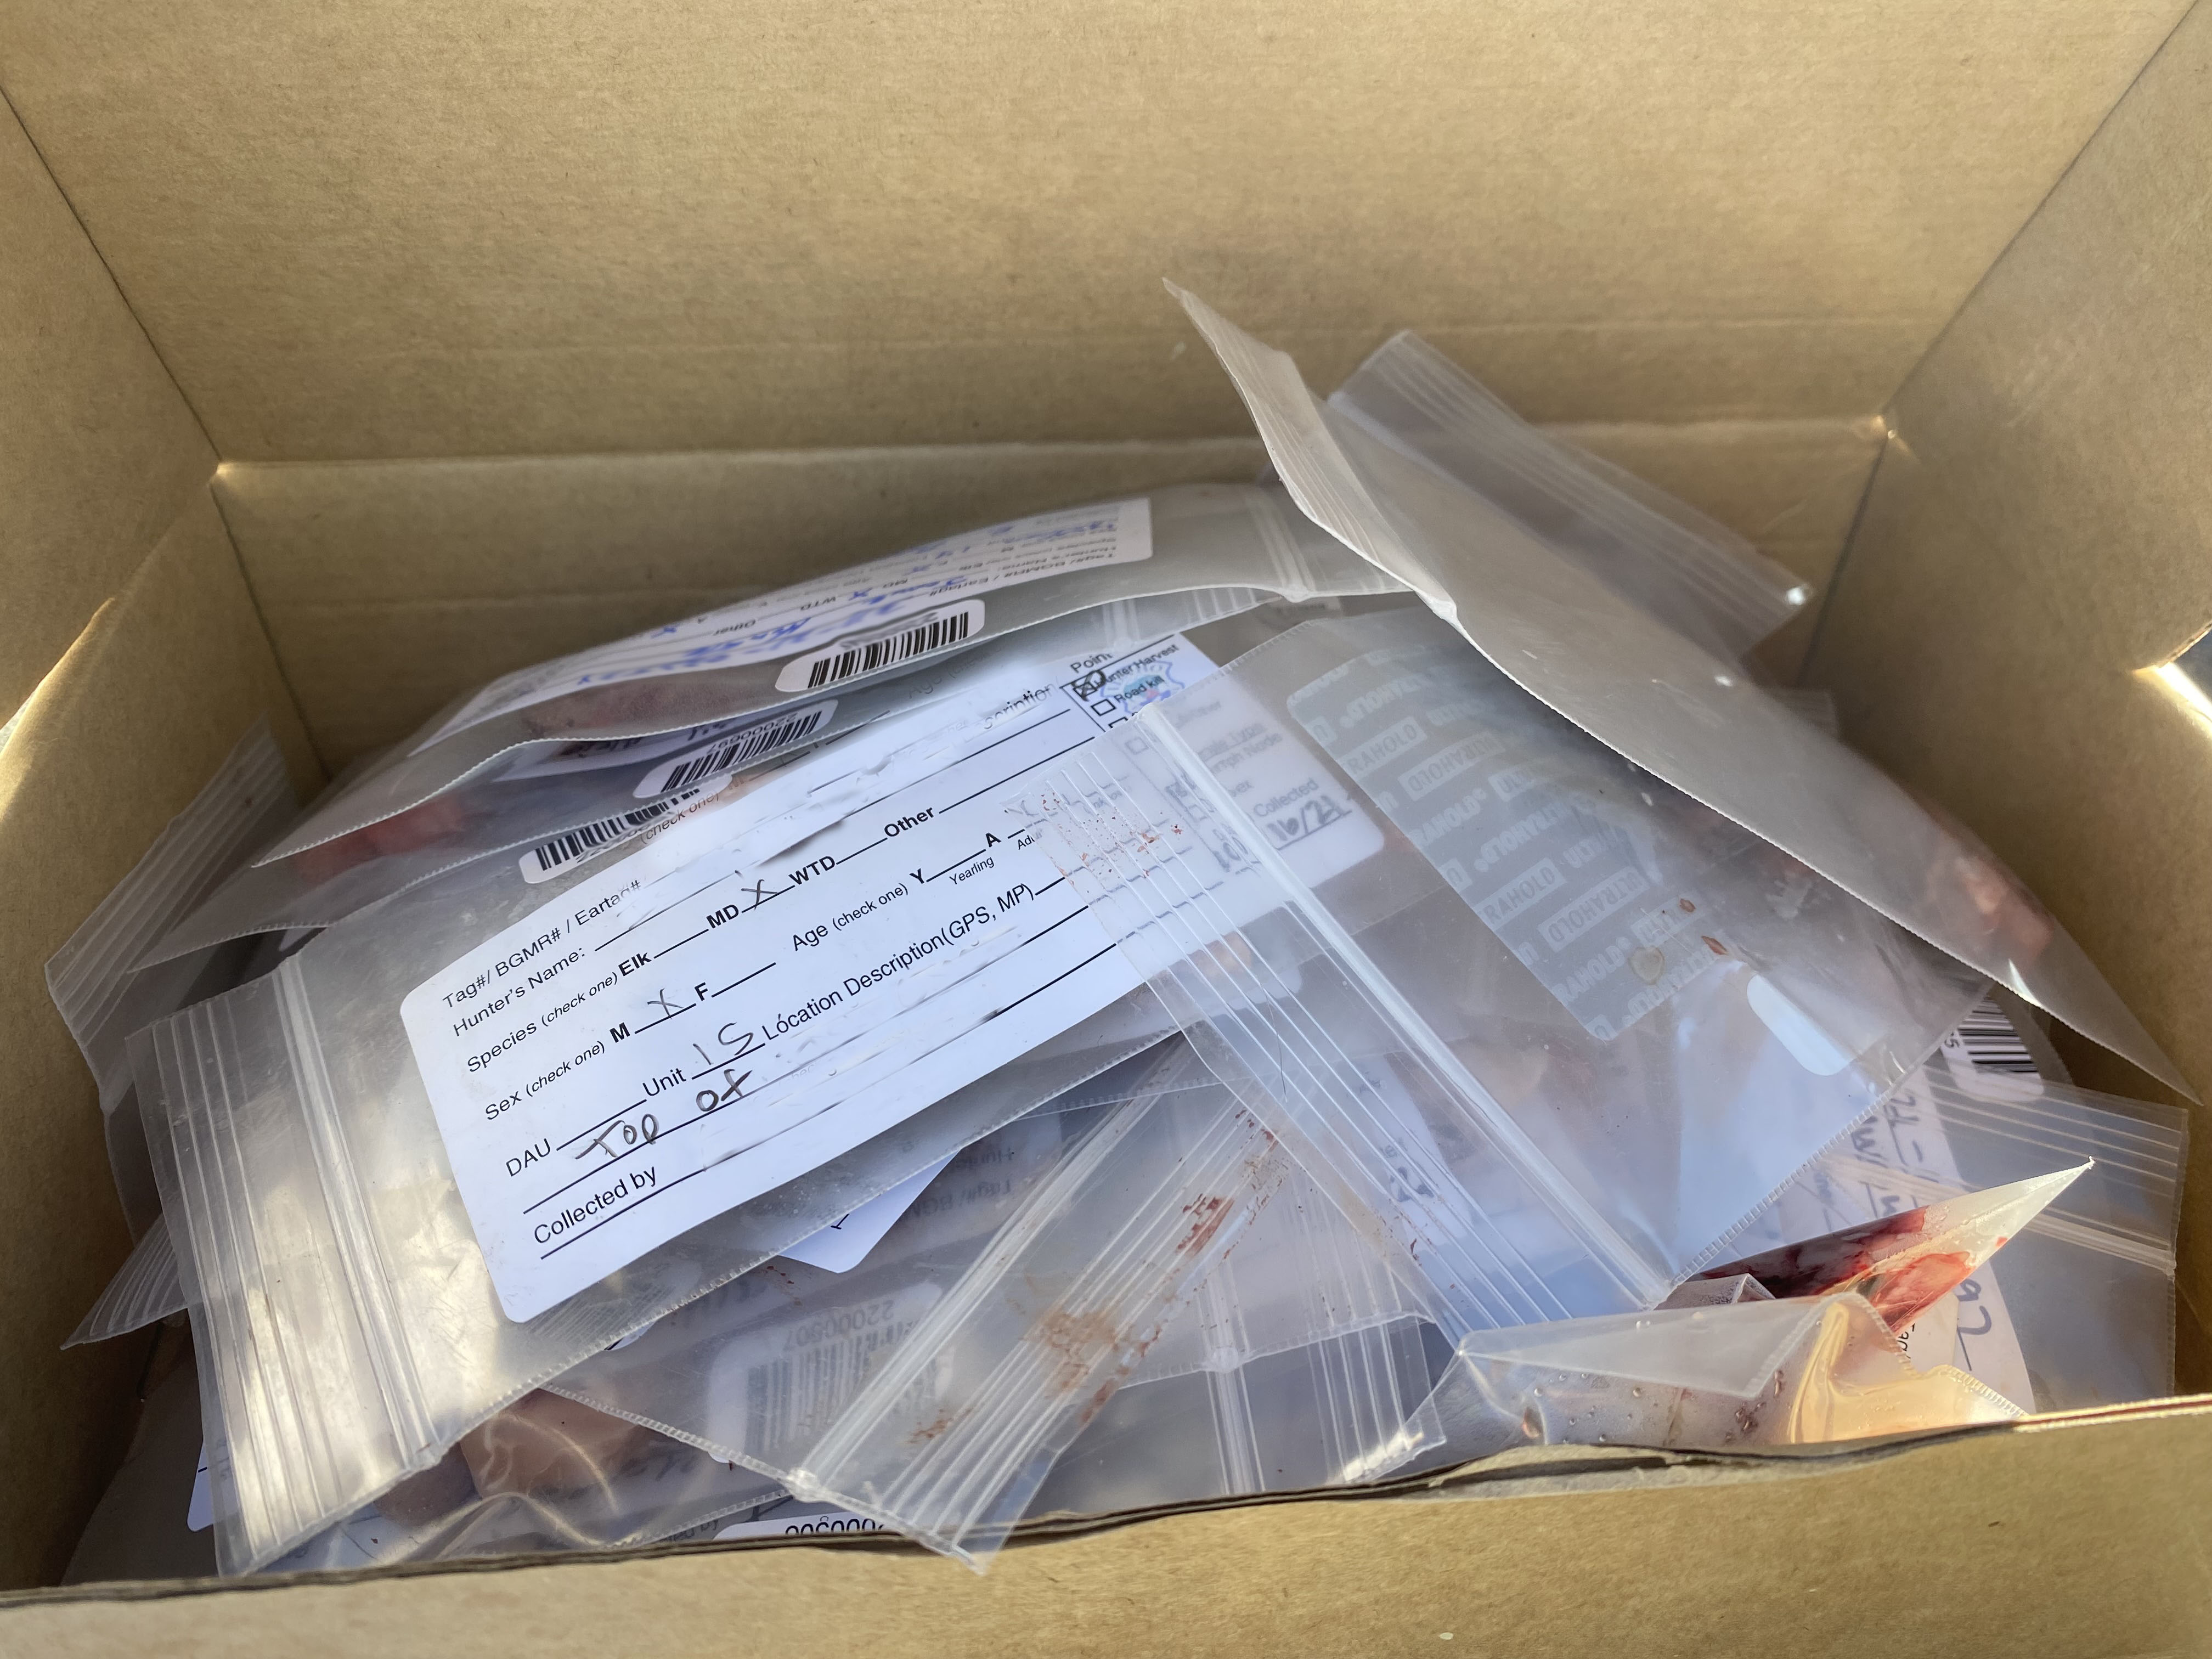 A box of sample kits